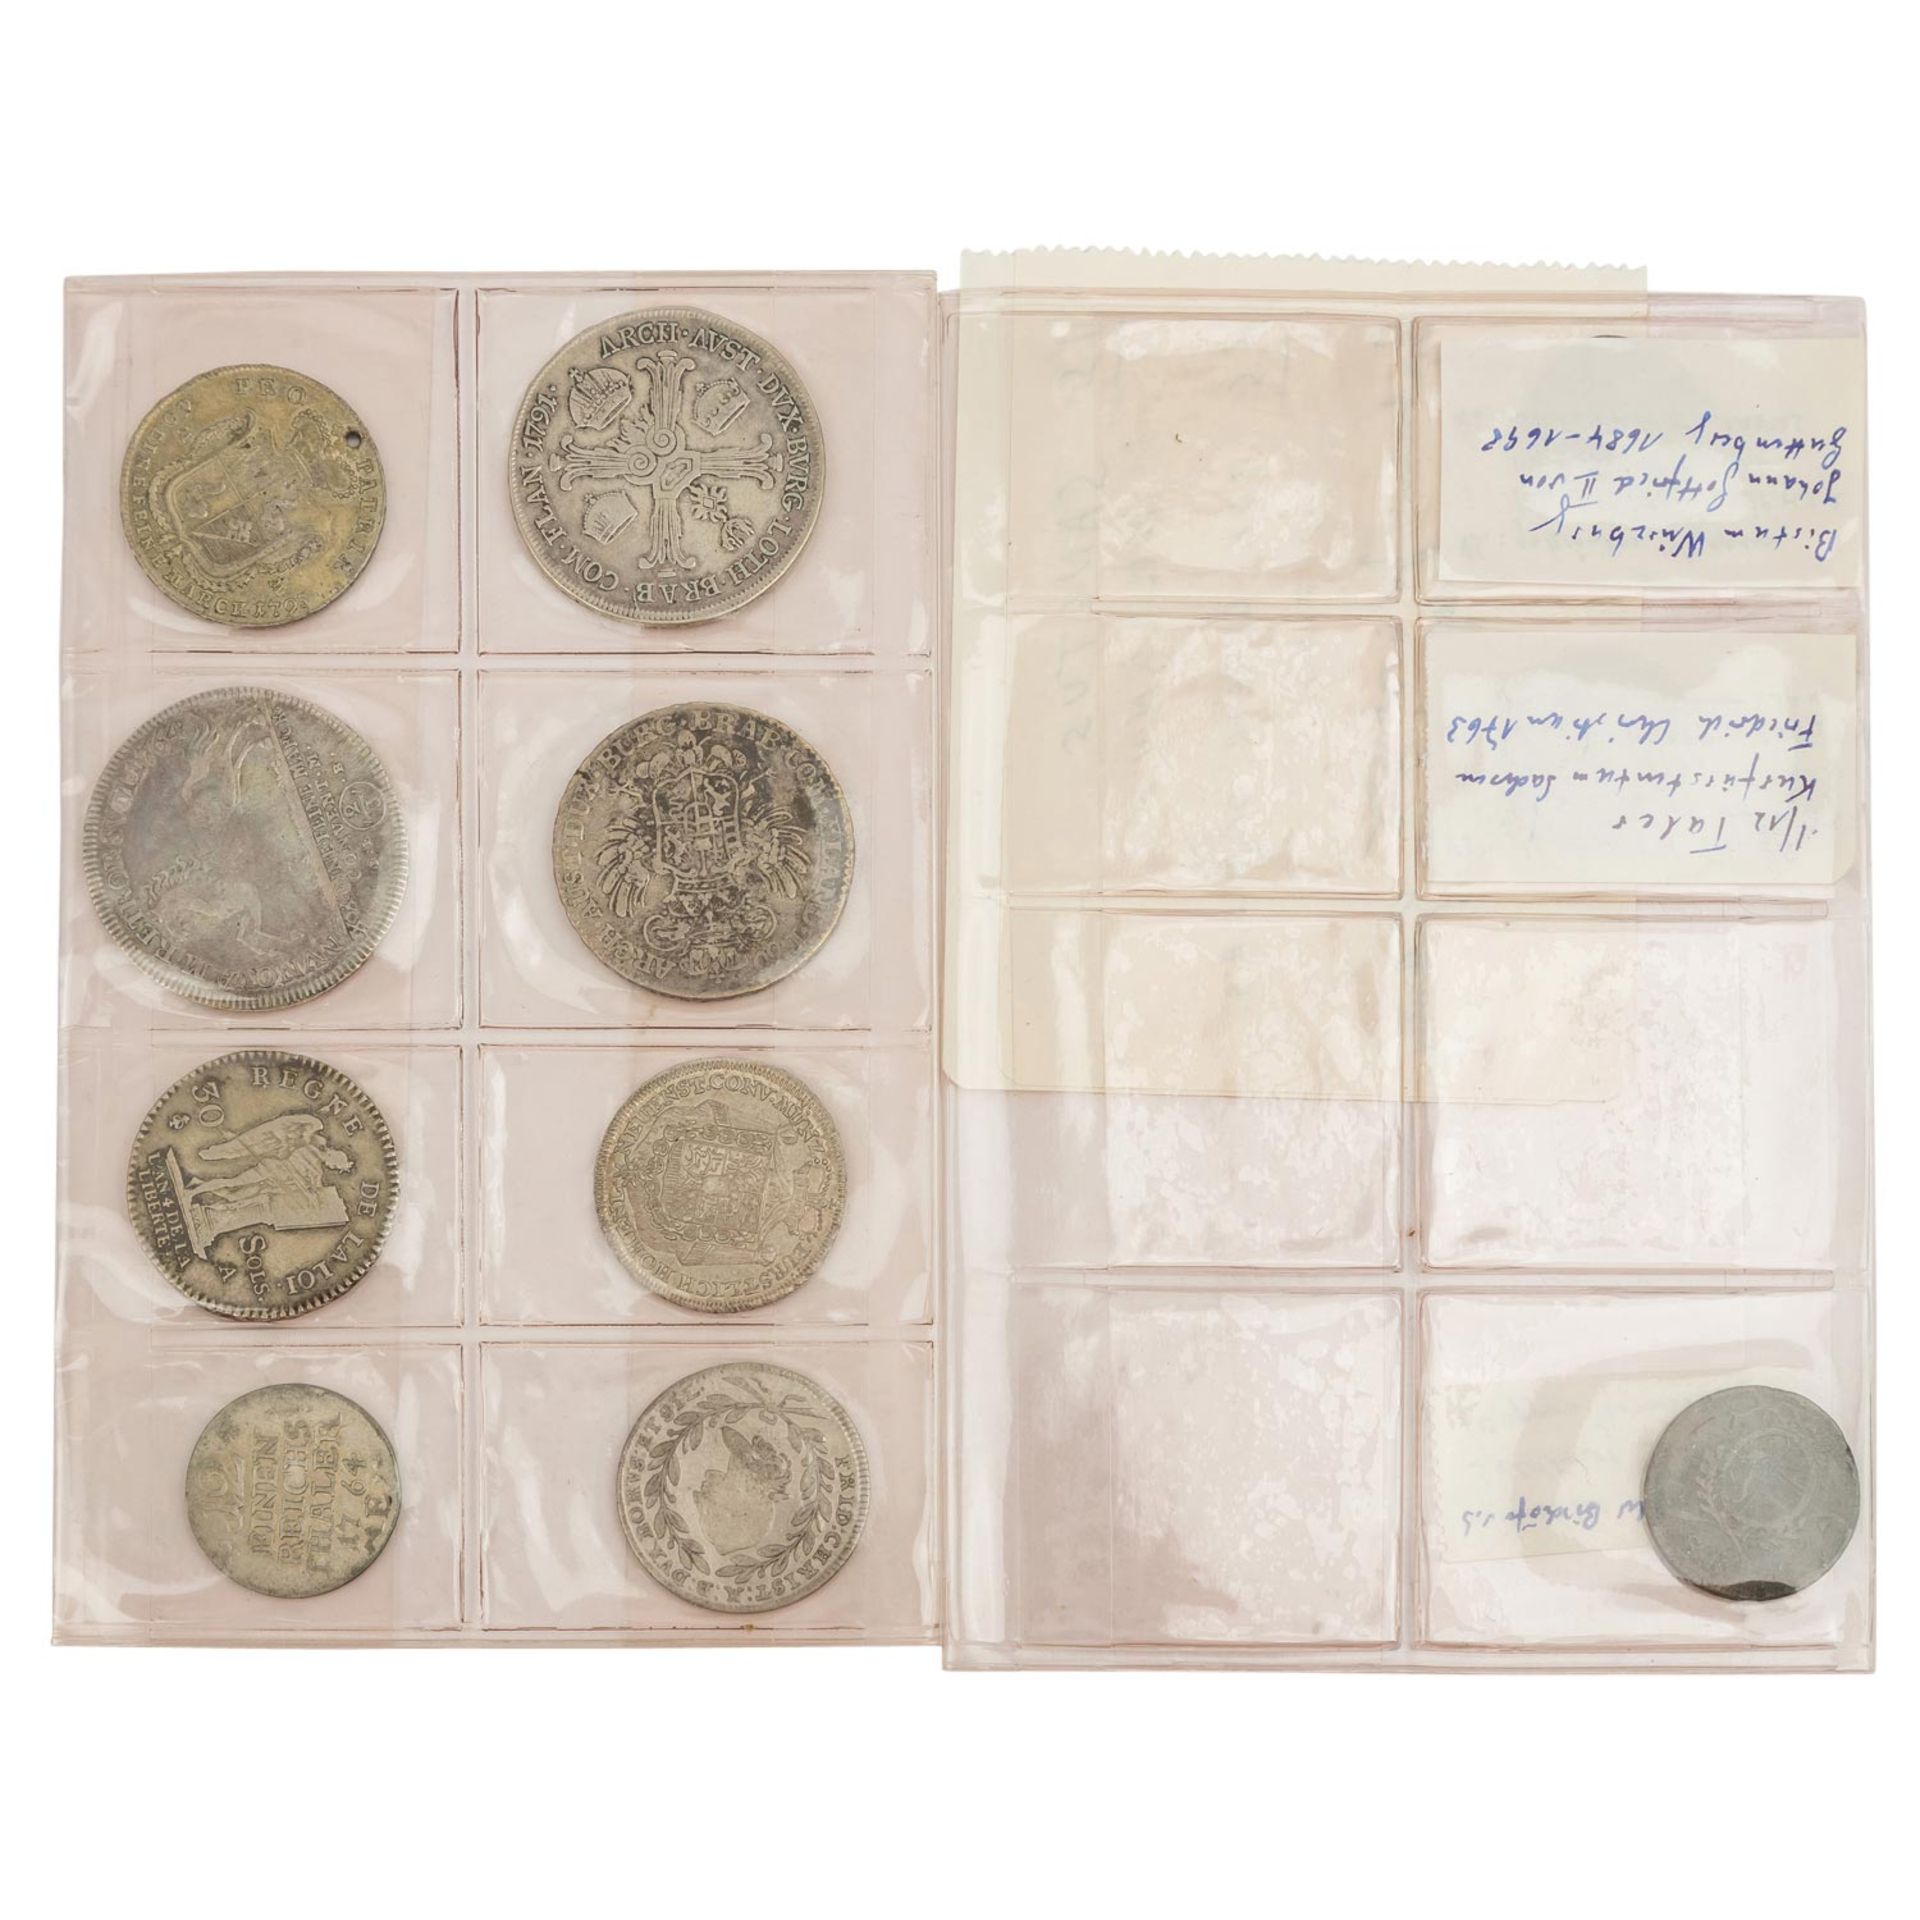 Kl. Konvolut Münzen des 18. Jh. mit ca. 11 Münzen